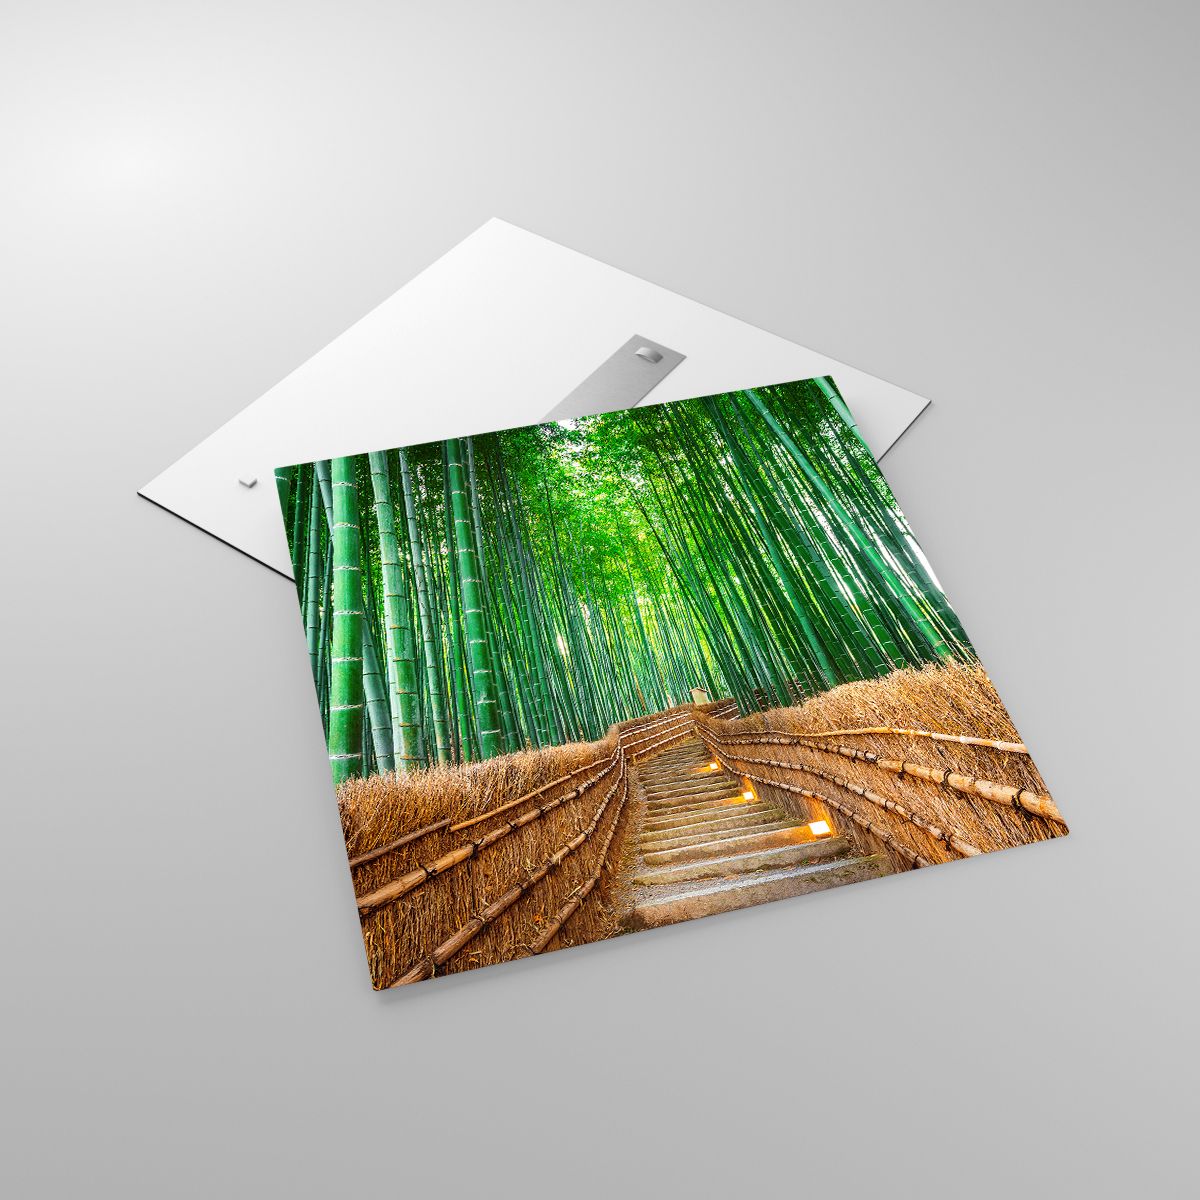 Glasbild Bambus, Glasbild Bambuswald, Glasbild Natur, Glasbild Landschaft, Glasbild Asien